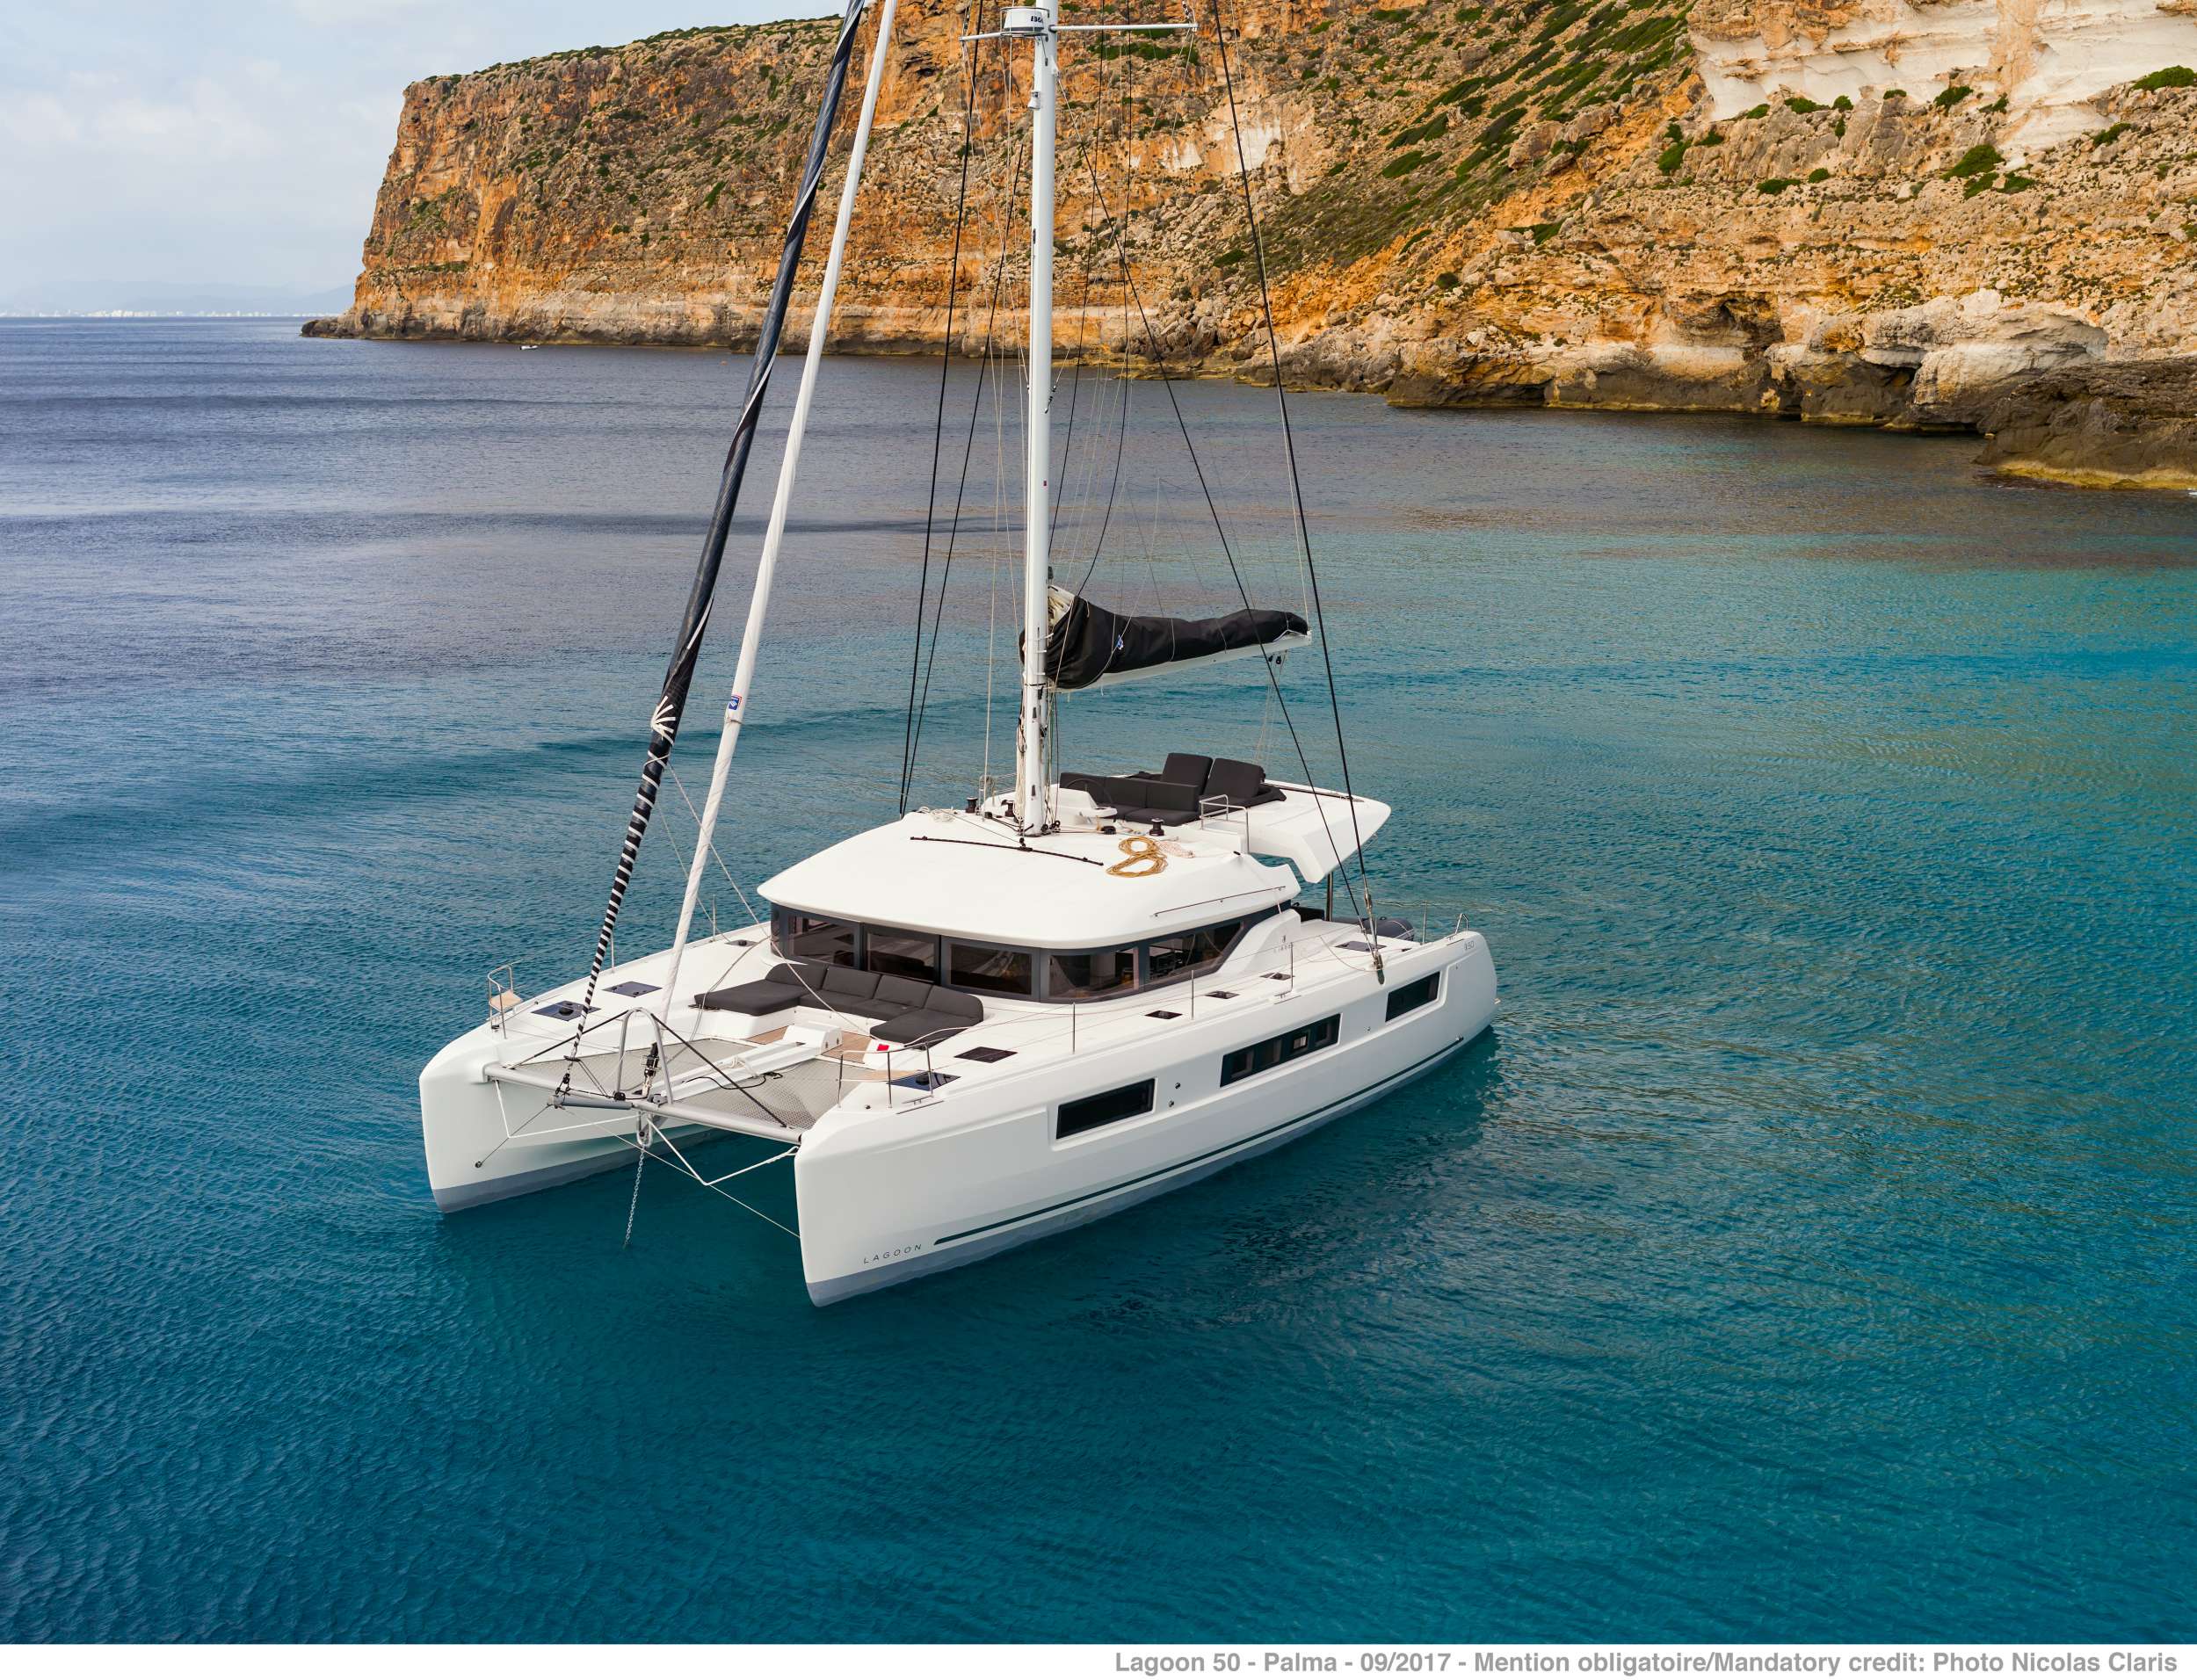 ONEIDA 2 - Luxury yacht charter Greece & Boat hire in Greece 1